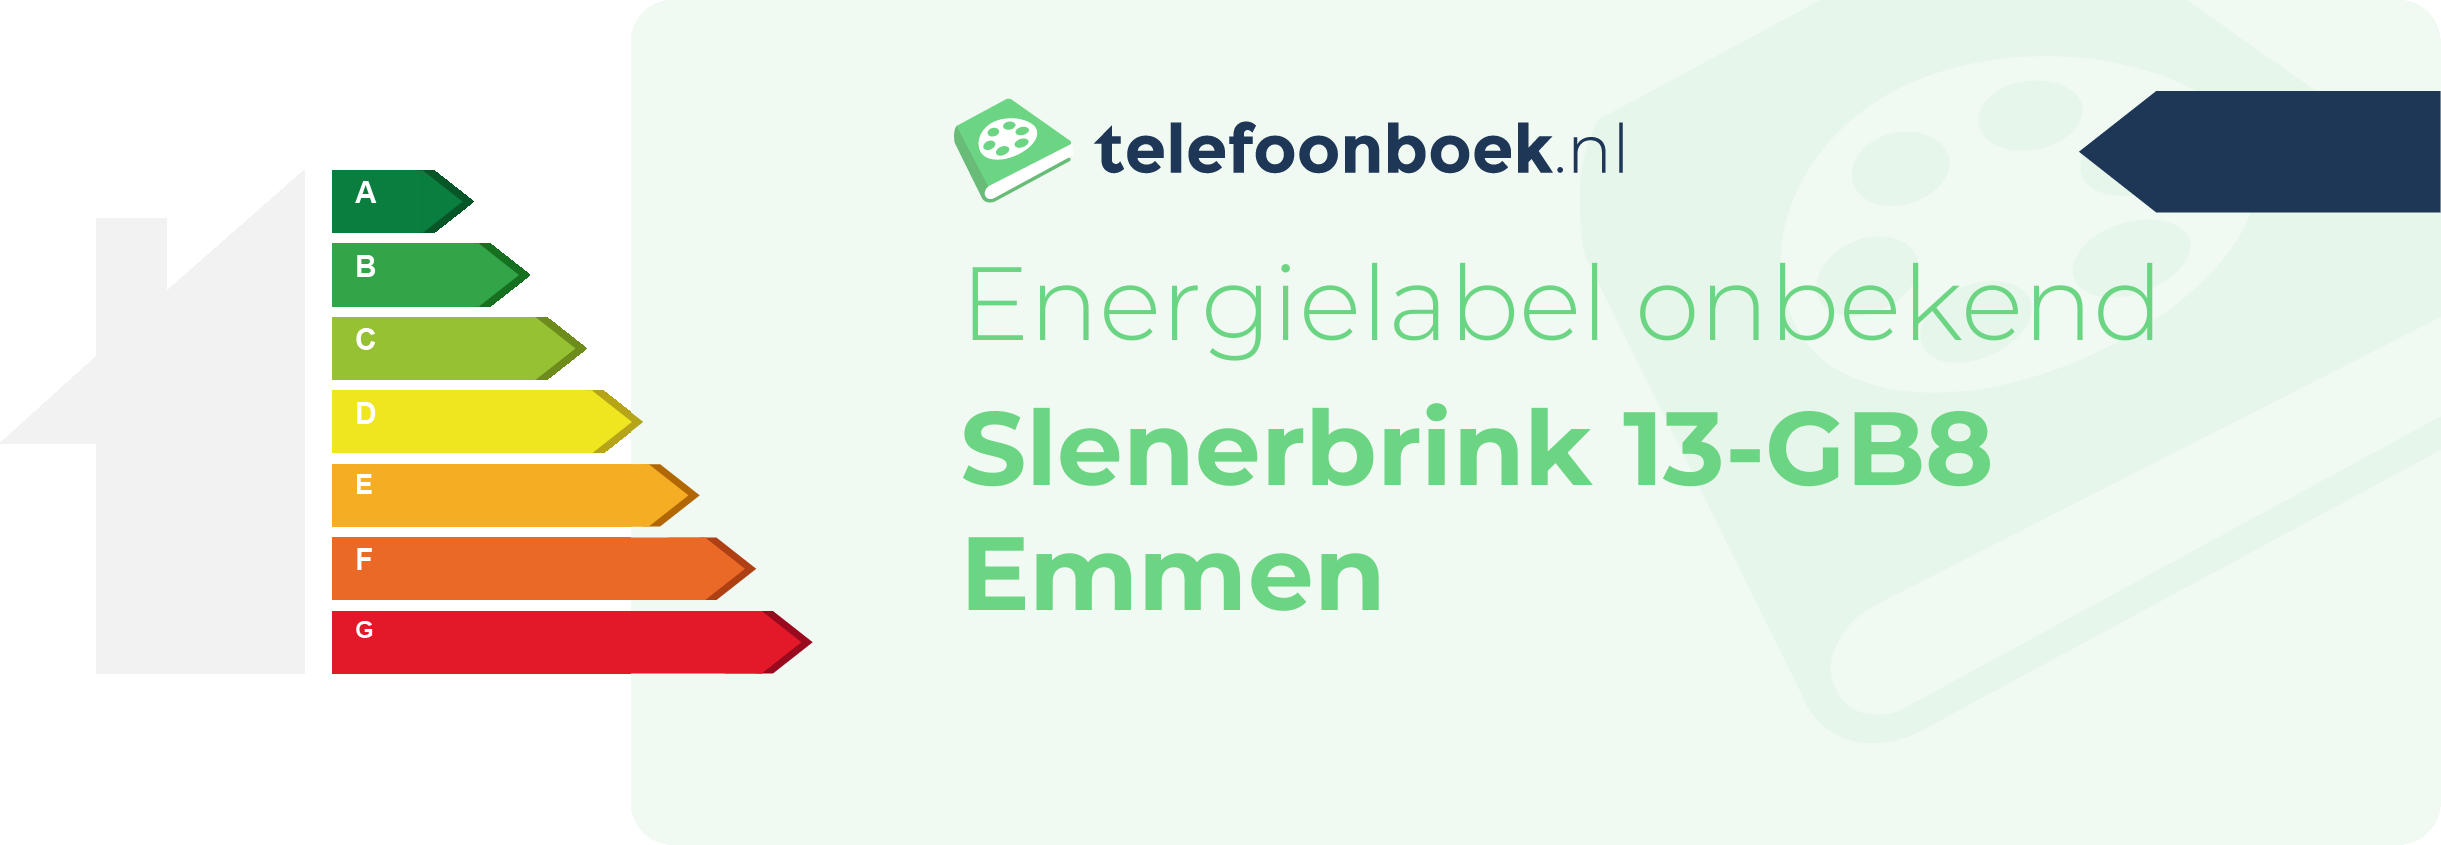 Energielabel Slenerbrink 13-GB8 Emmen